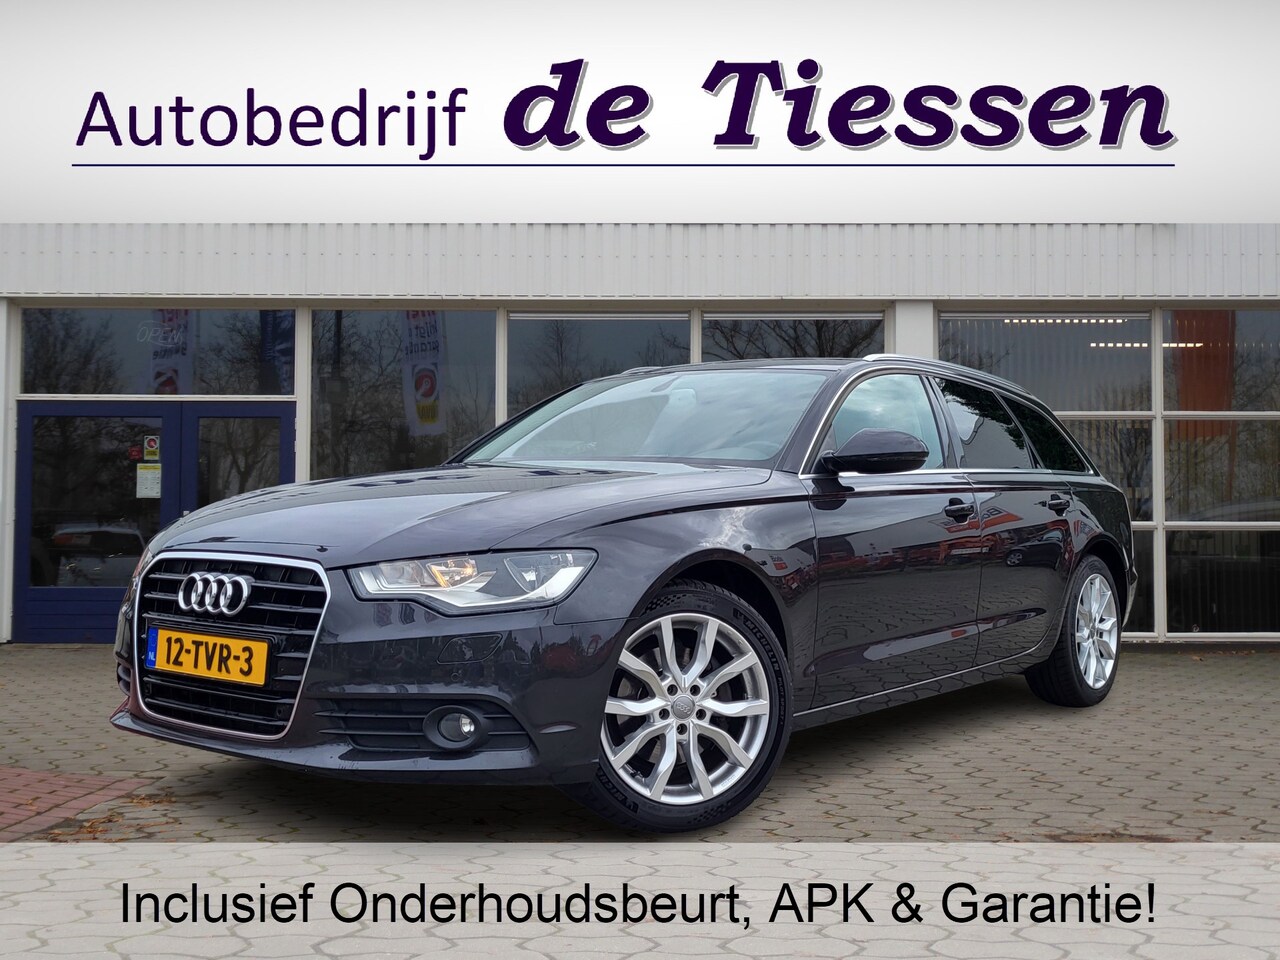 Audi A6 Avant - 2.0 TDI Automaat Business Edition, Rijklaar met beurt & garantie! - AutoWereld.nl